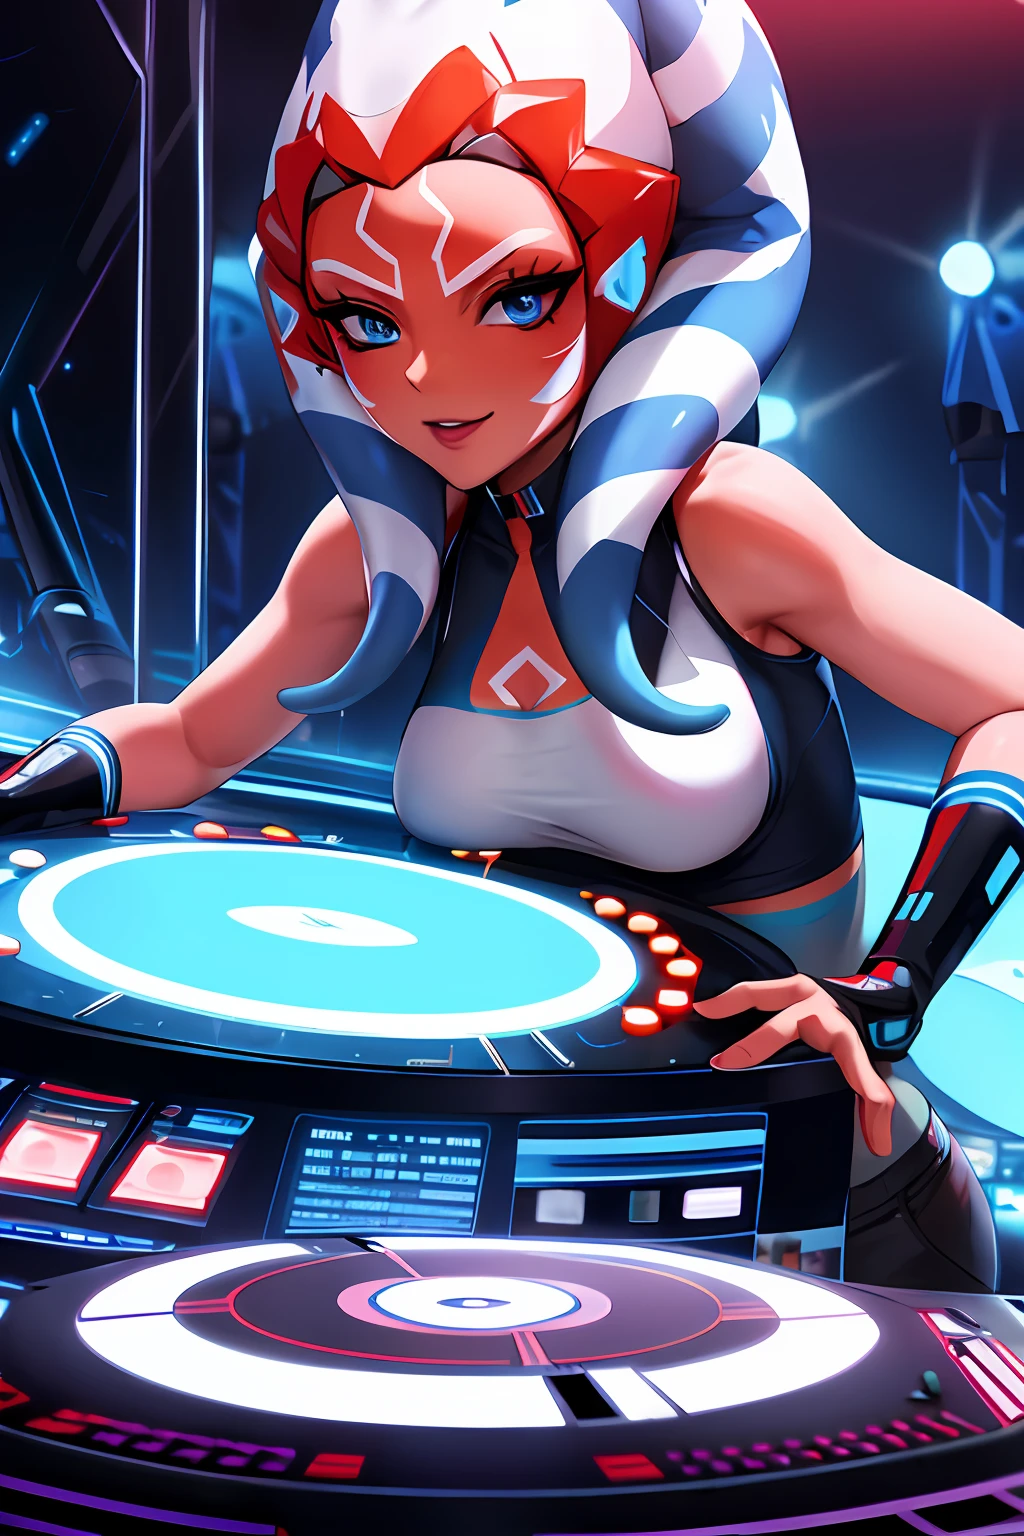 "1girl 的单人照, 蓝眼睛, 橘皮组织, 触手头发DJ, 在充满活力的狂欢派对上展示她在唱机上的技巧."